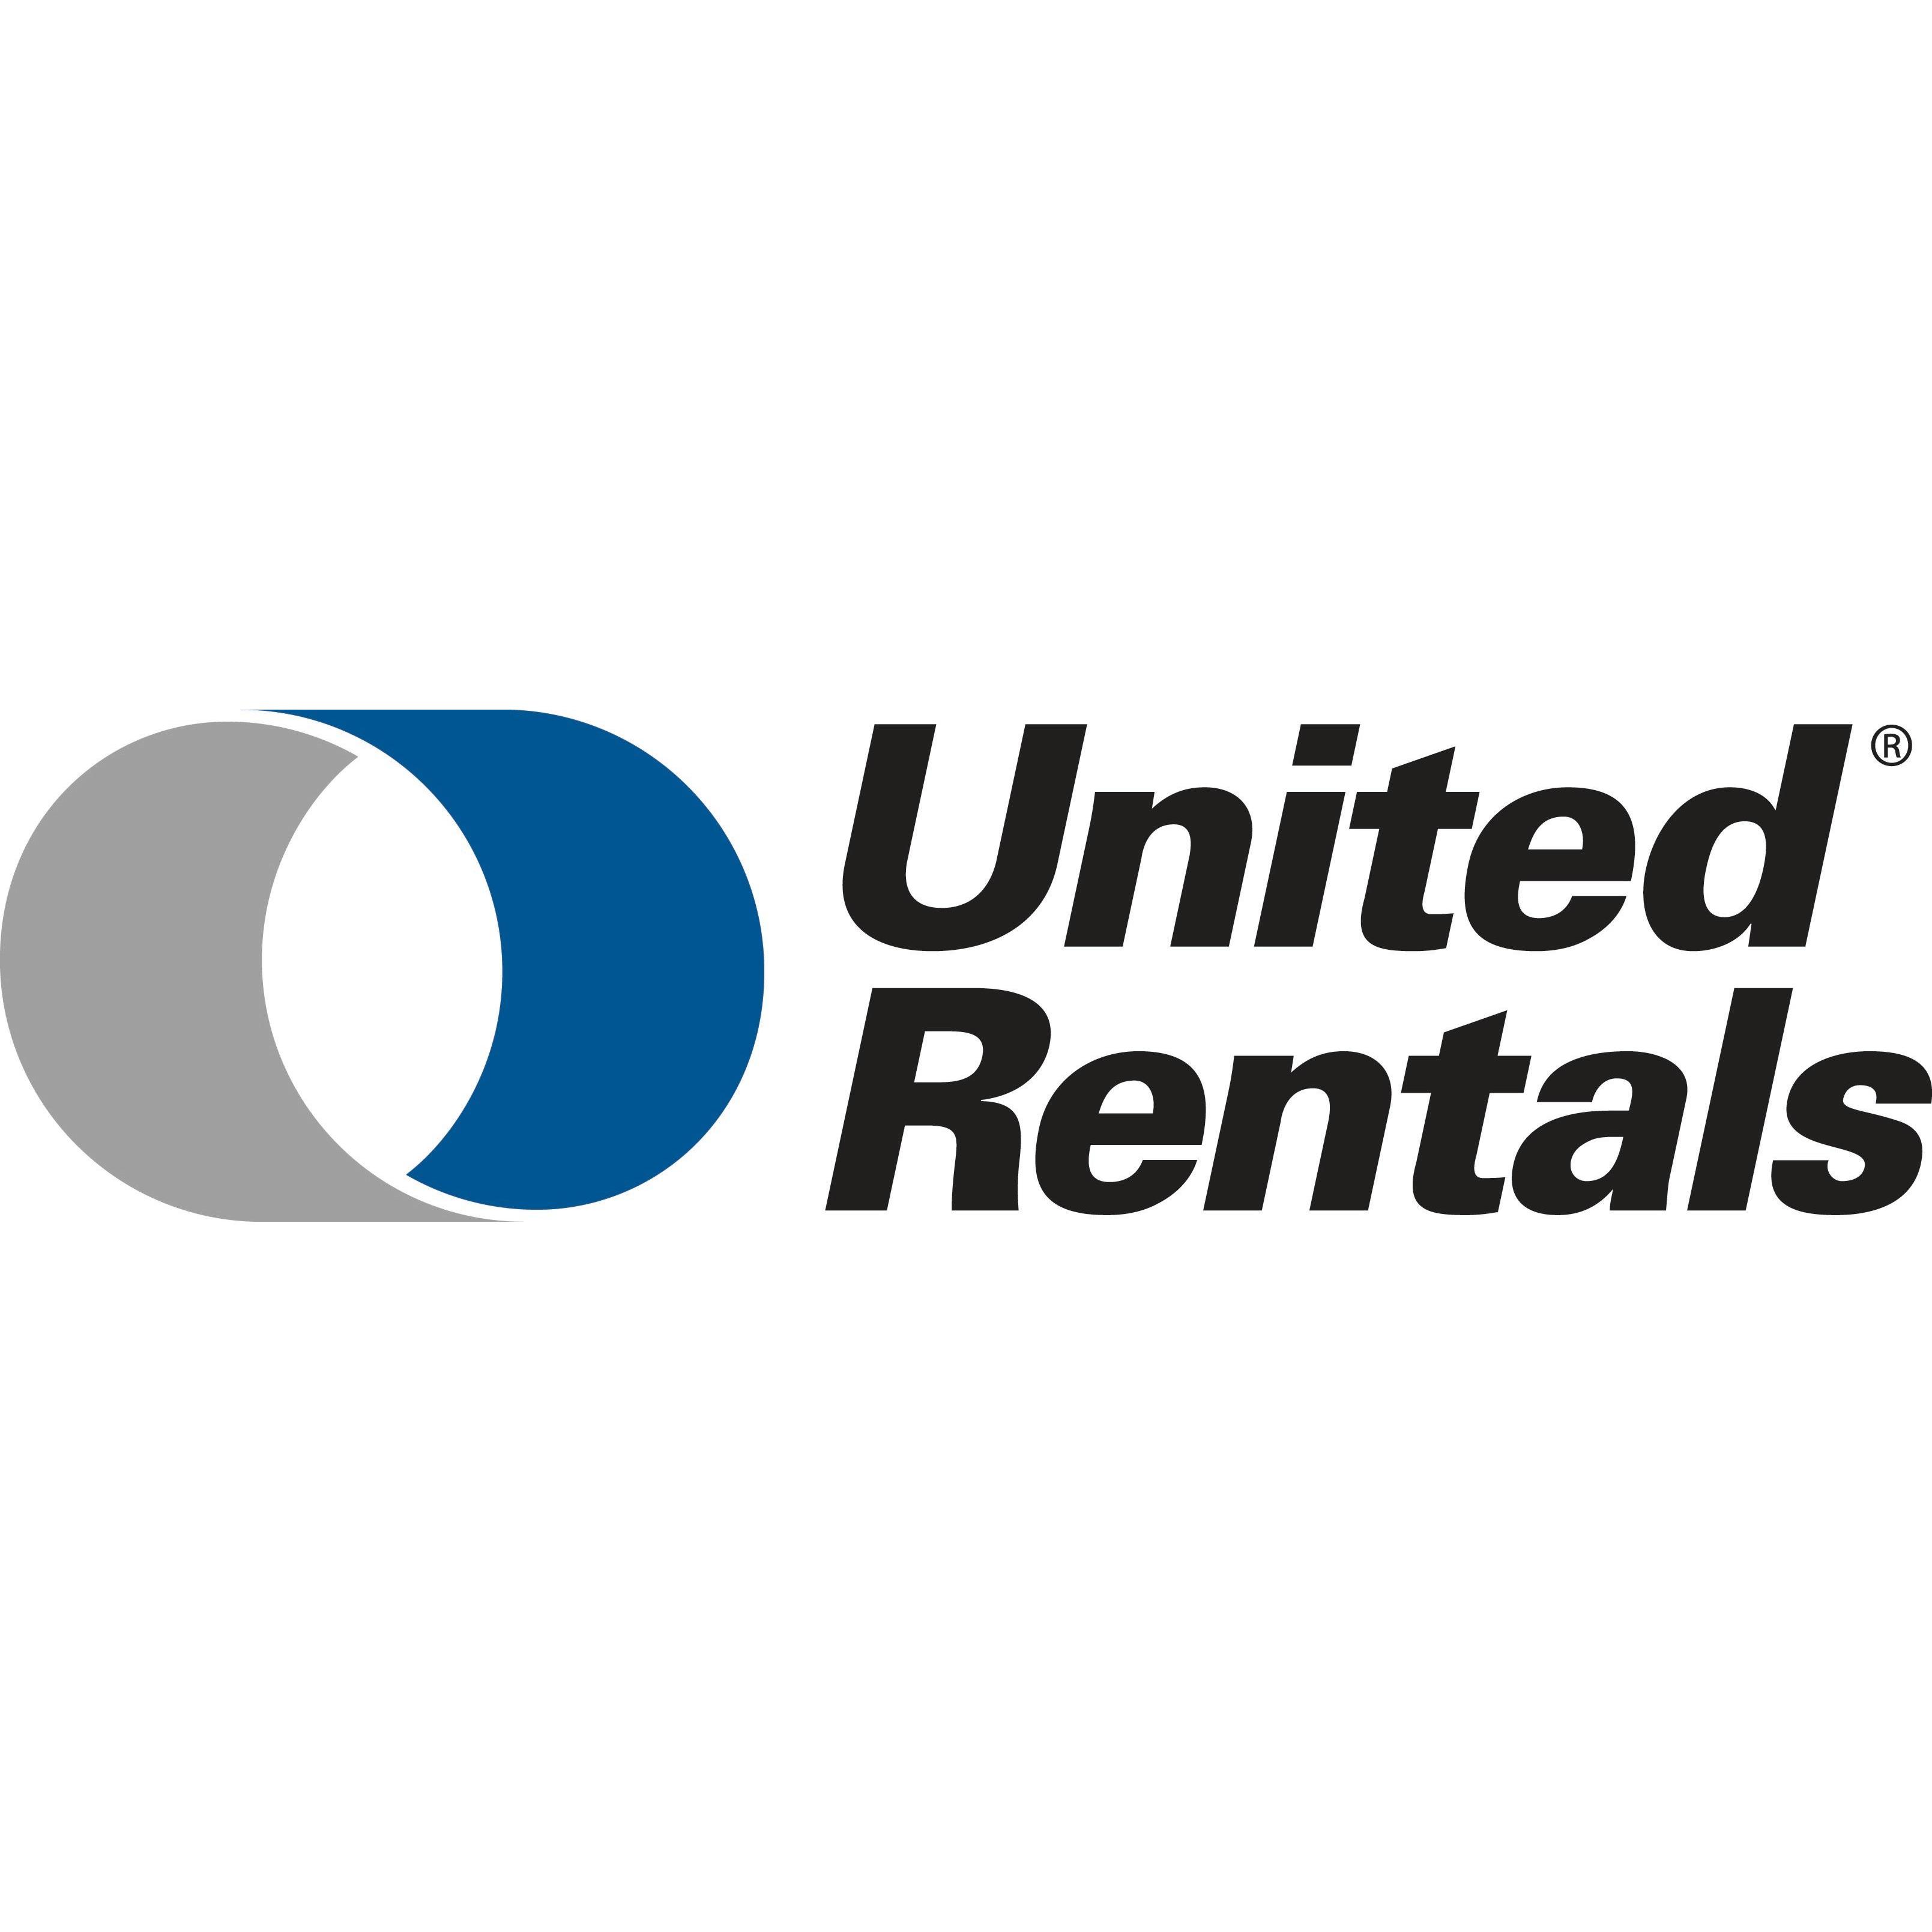 United Rentals - Power & HVAC